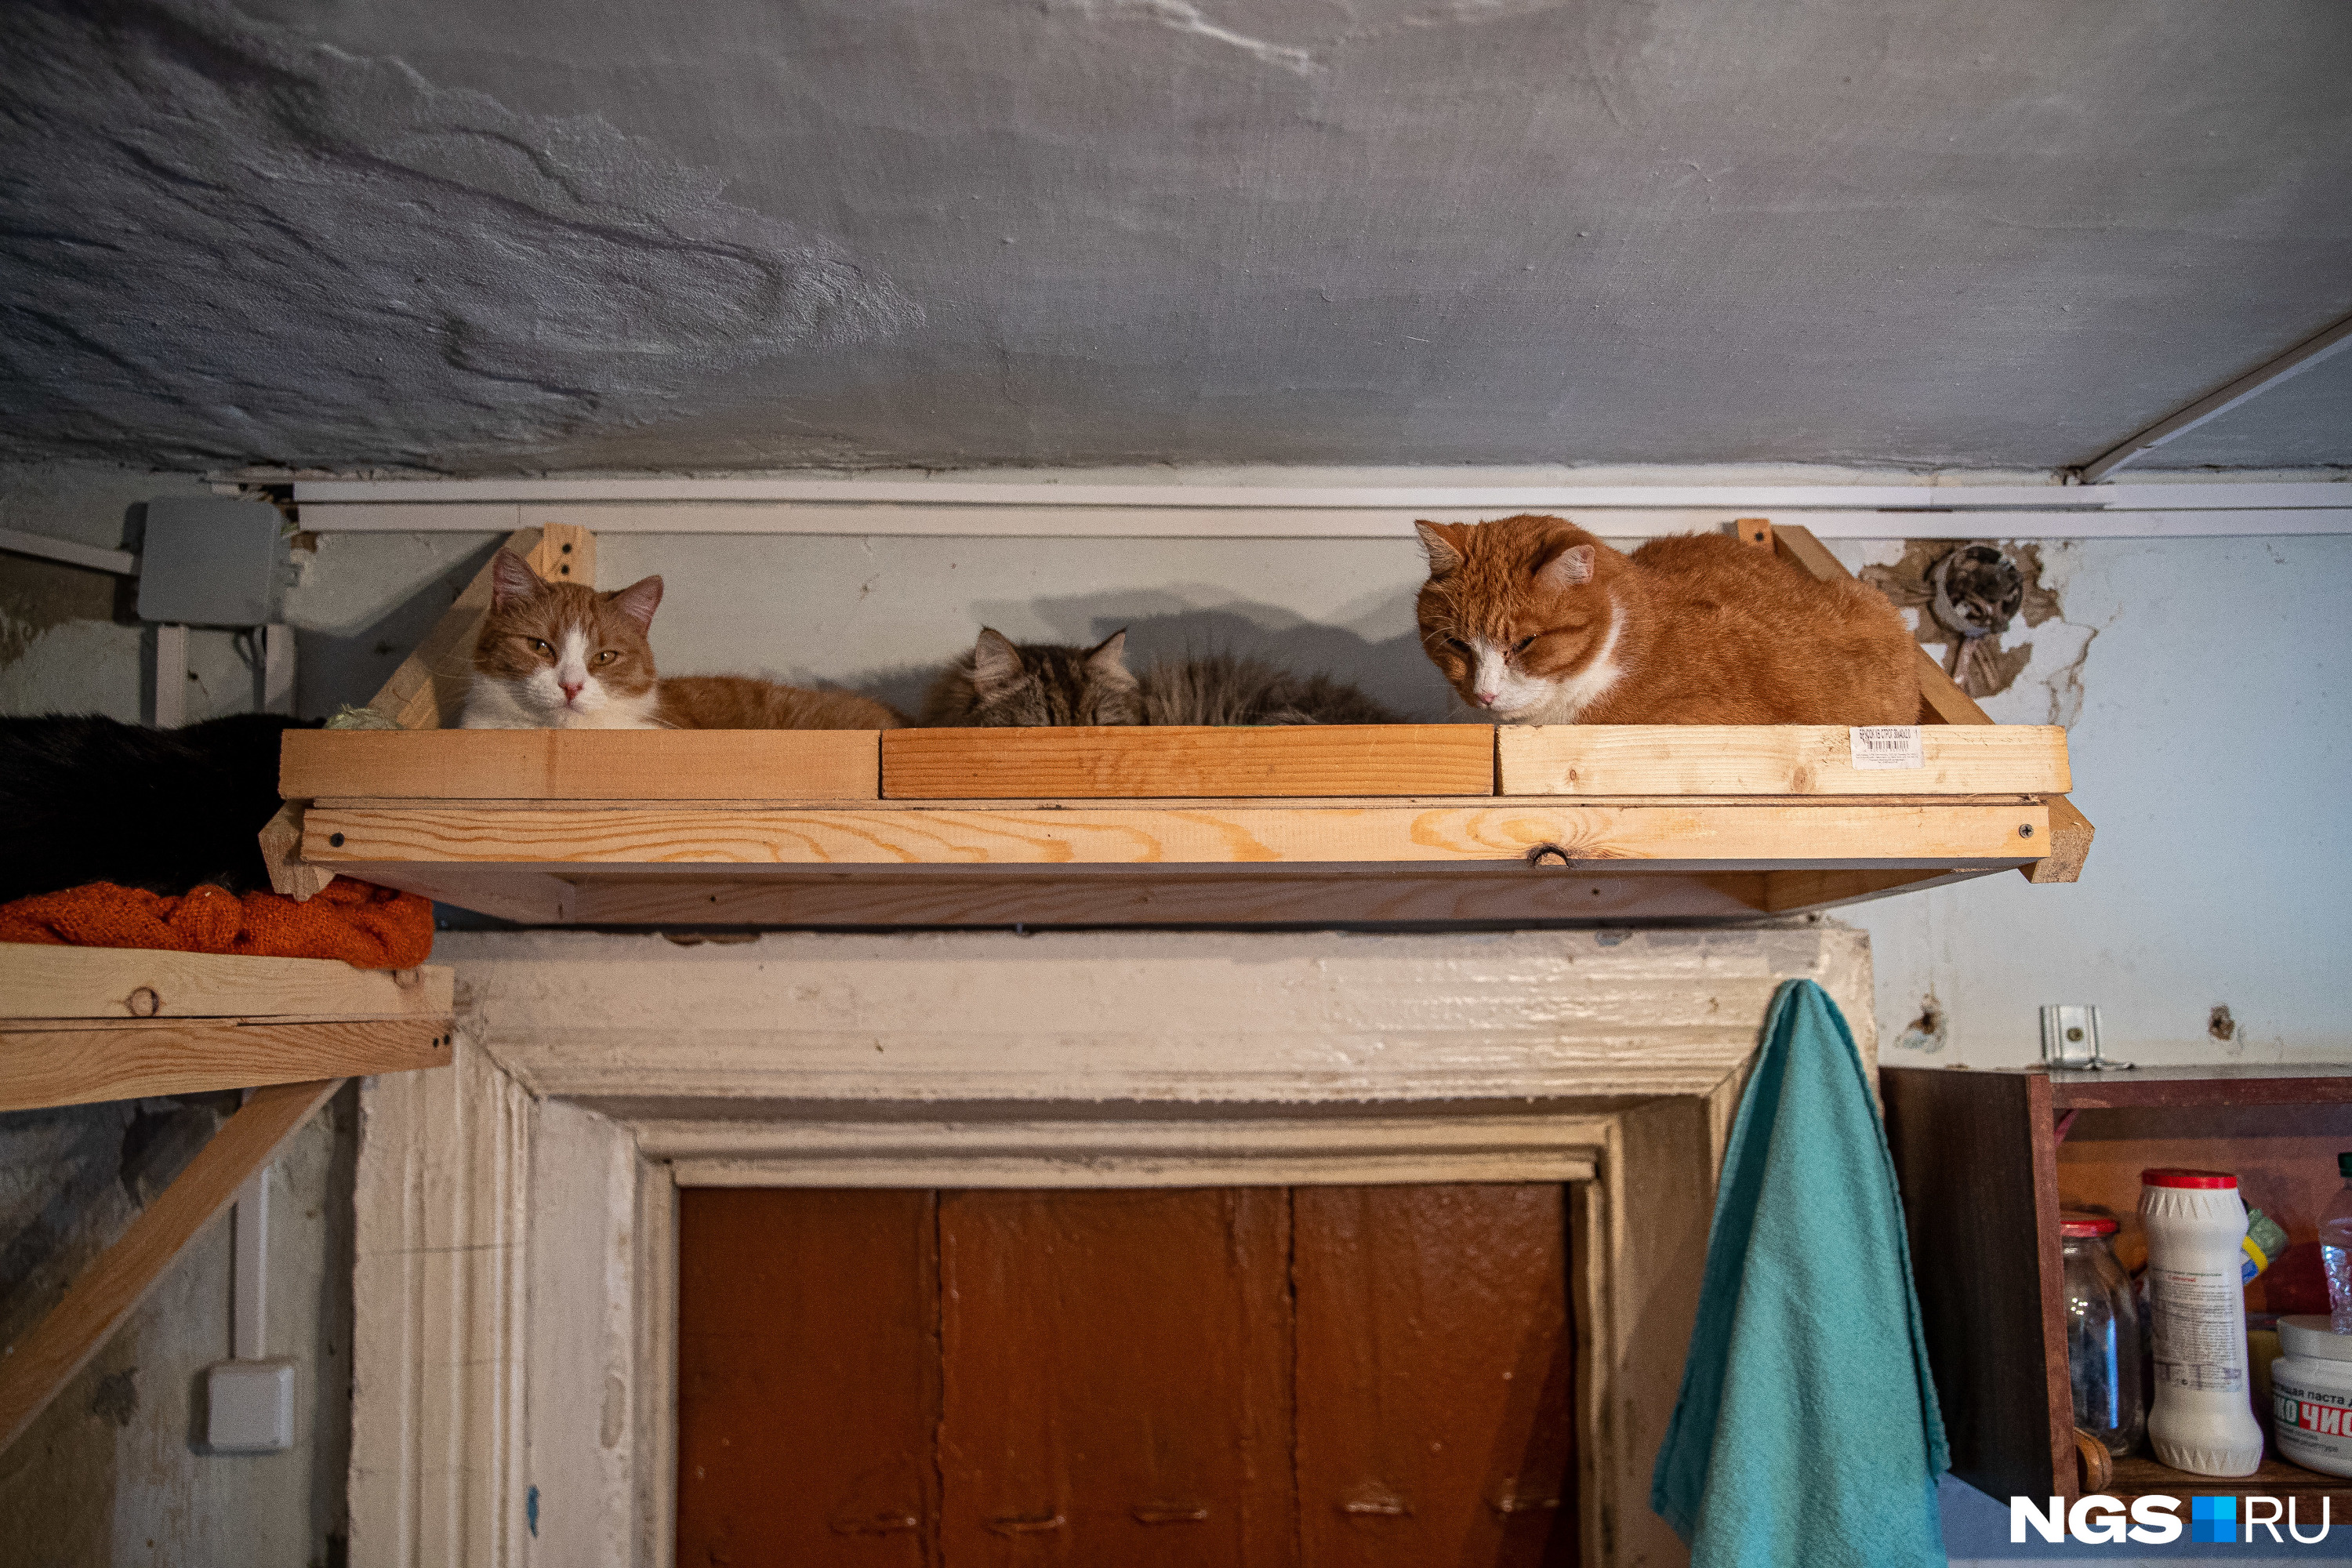 Под потолком сидят коты, которые раньше были уличными. Они ведут себя осторожно и спокойно наблюдают за происходящим